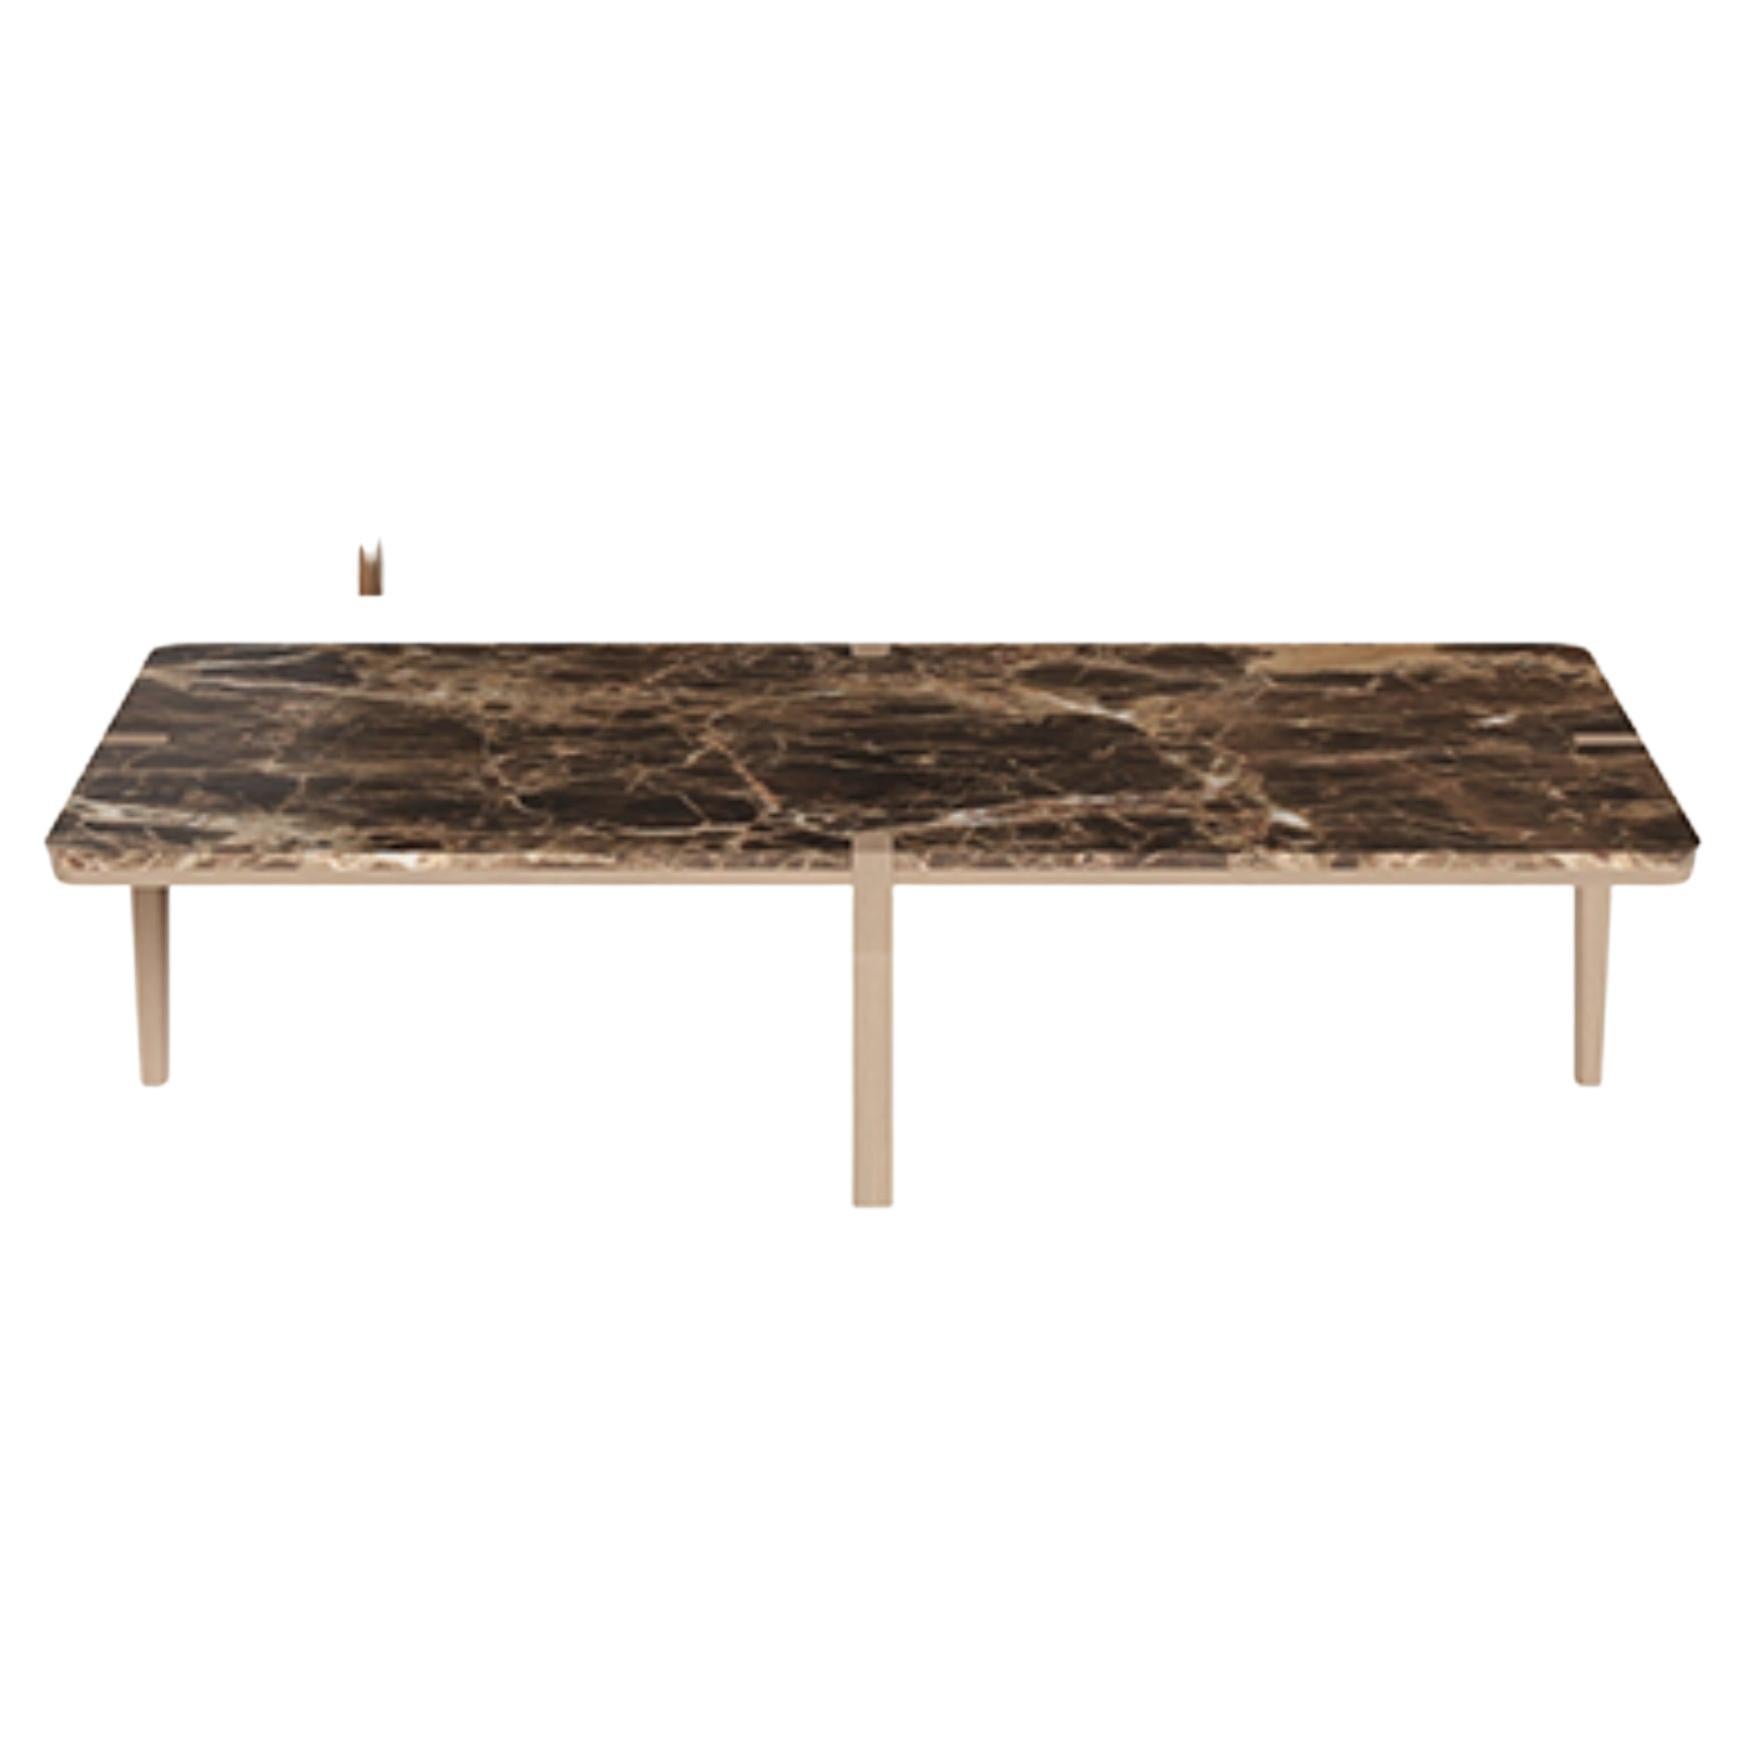 Table basse rectangulaire de taille moyenne en marbre brun et noyer